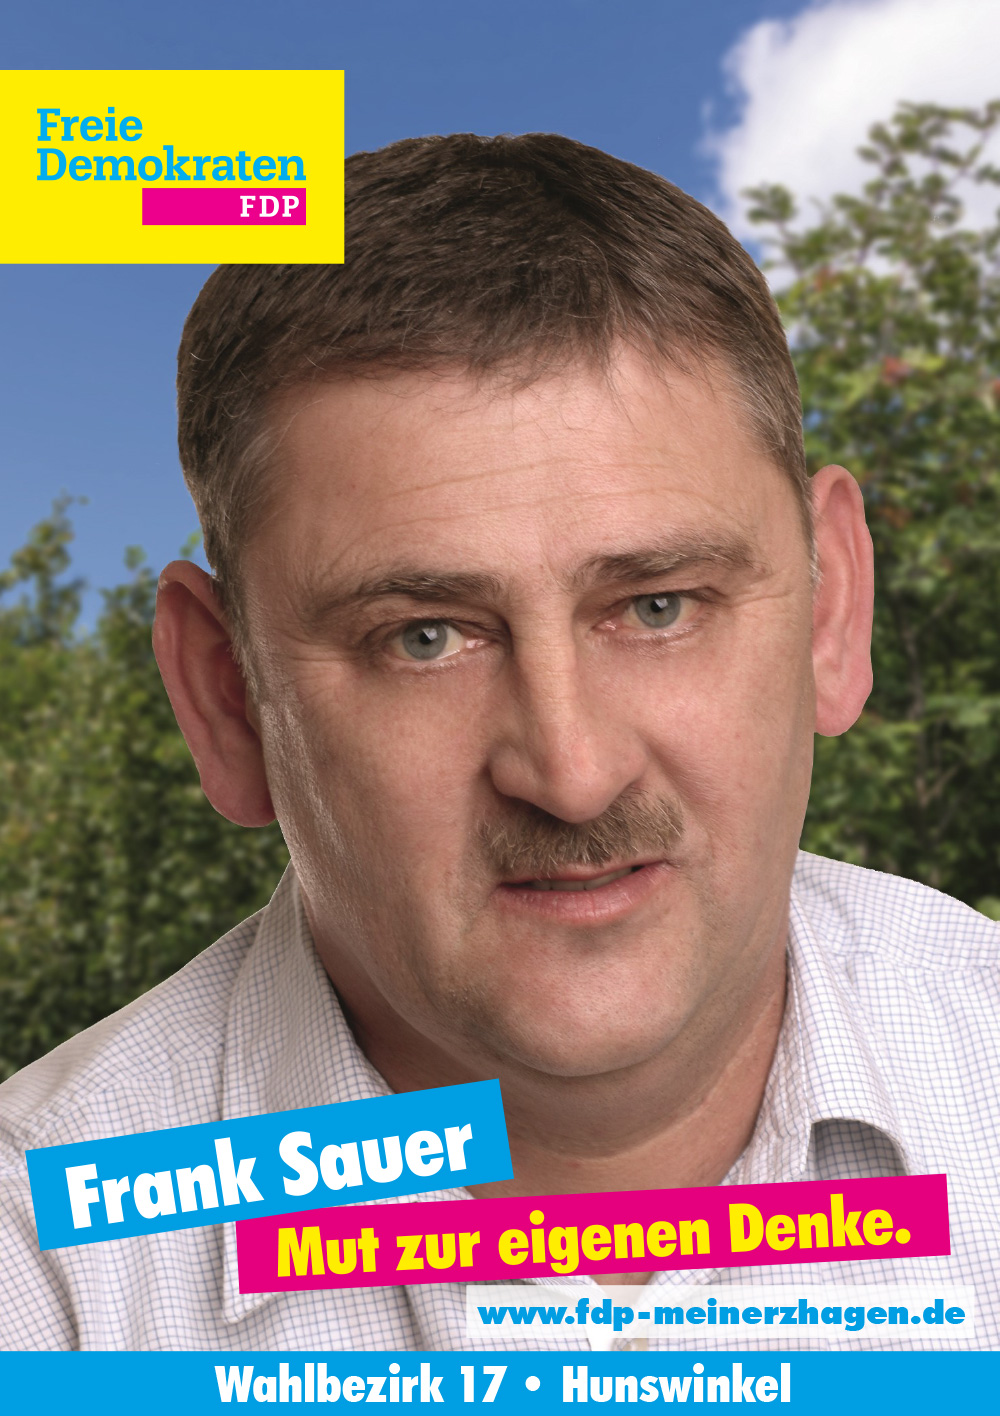 Wahlbezirk 17 - Frank Sauer